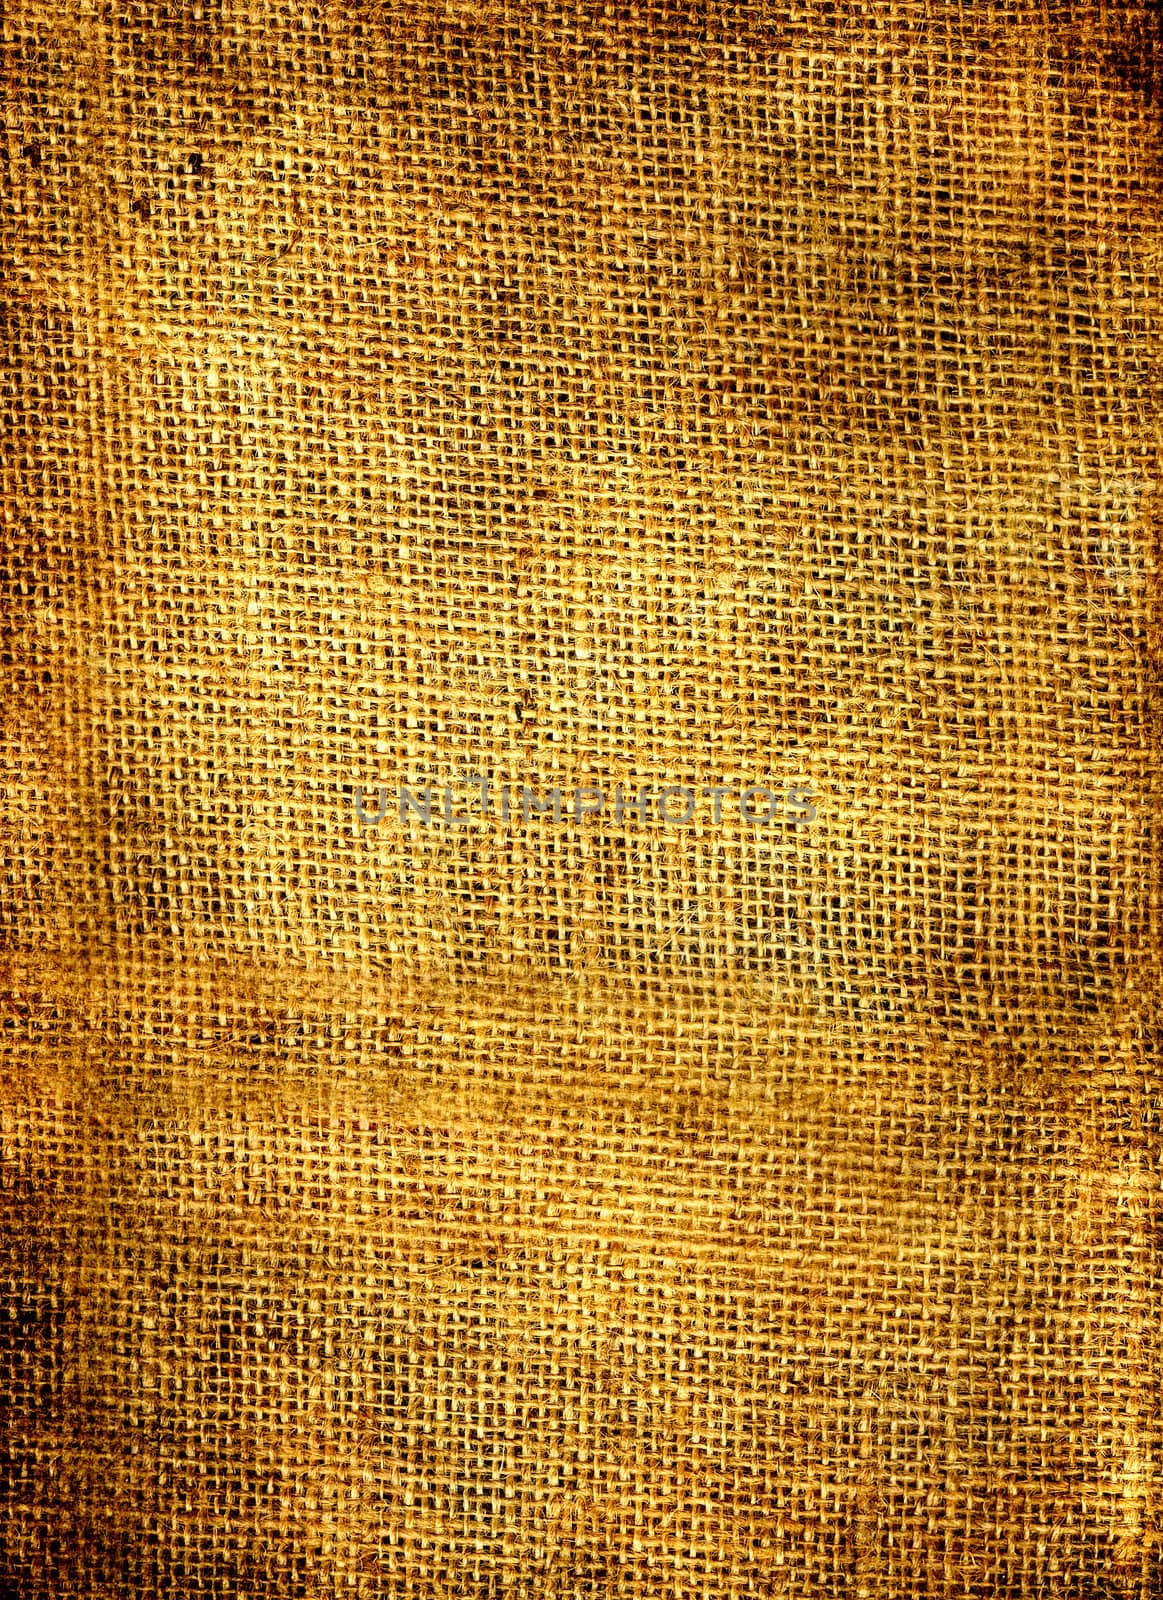 Closeup of an old sackcloth texture.